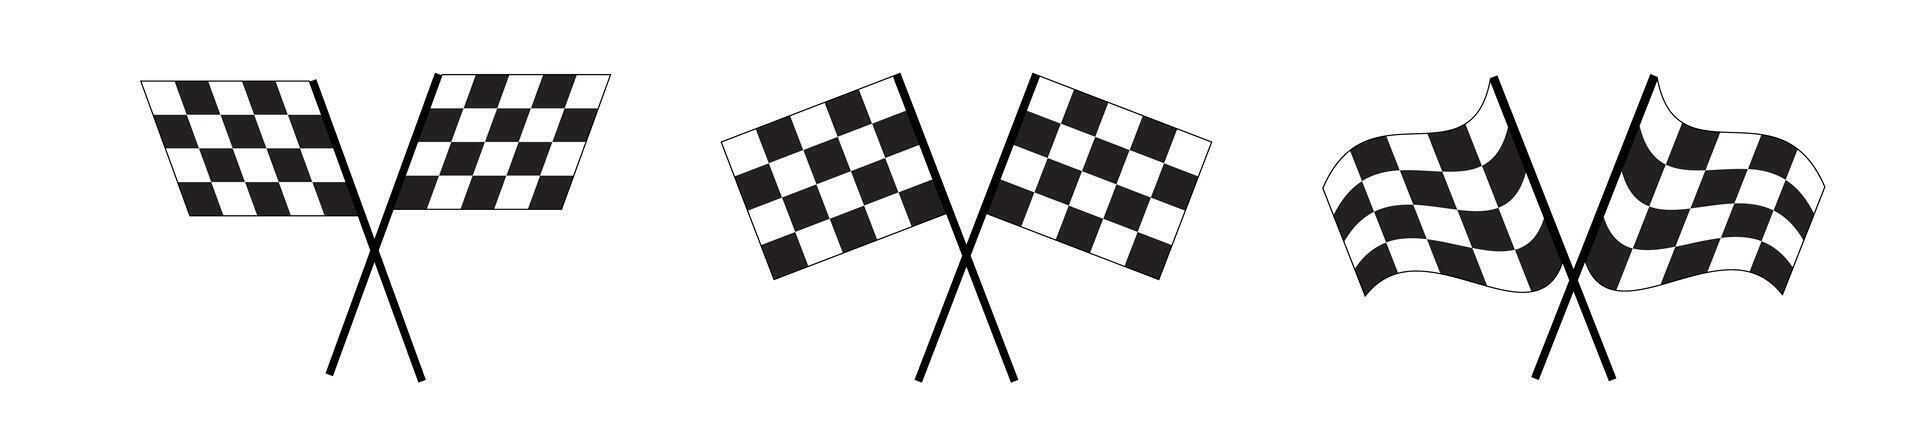 korsade lopp flaggor ikoner. Start och Avsluta sport bil konkurrens banderoller med rutig svart och vit kvadrater mönster. motocross, samling, bil maraton mästerskap tecken vektor